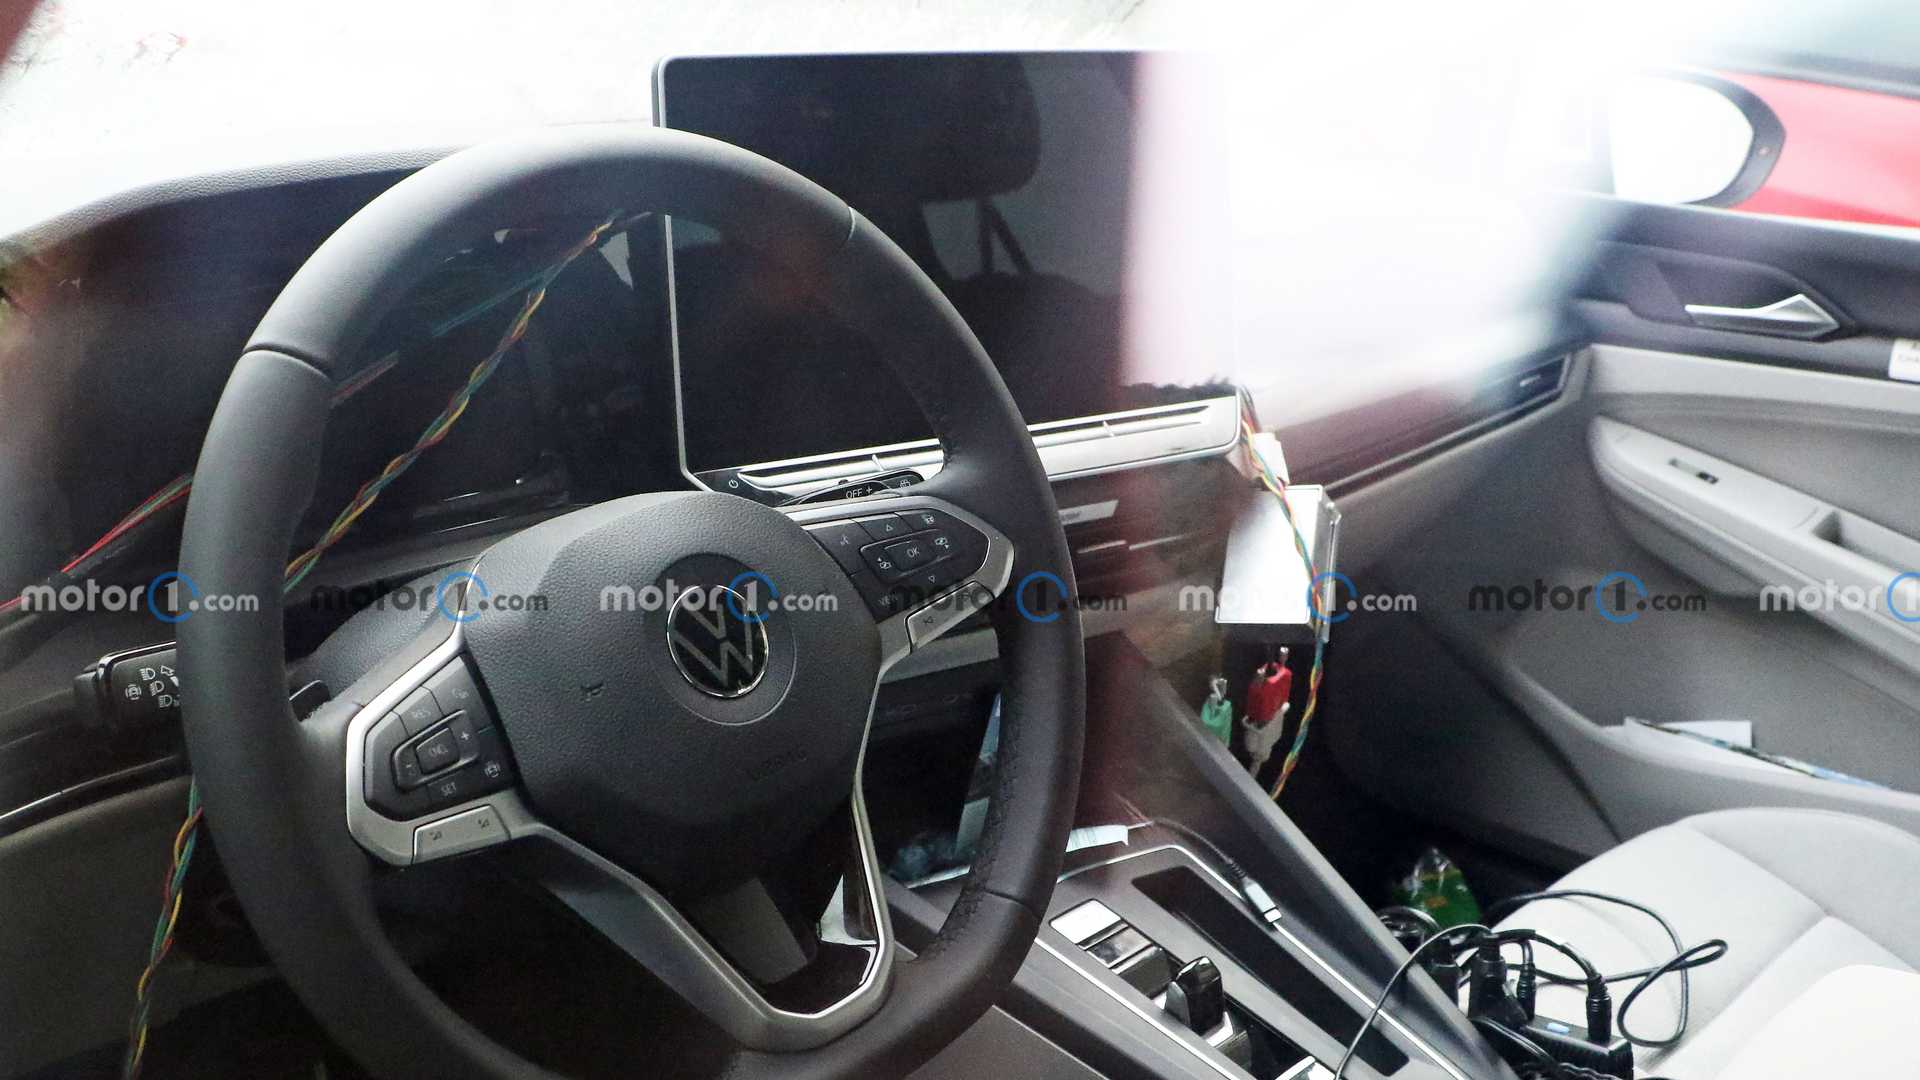 Оновлений VW Golf отримає великий сенсорний дисплей